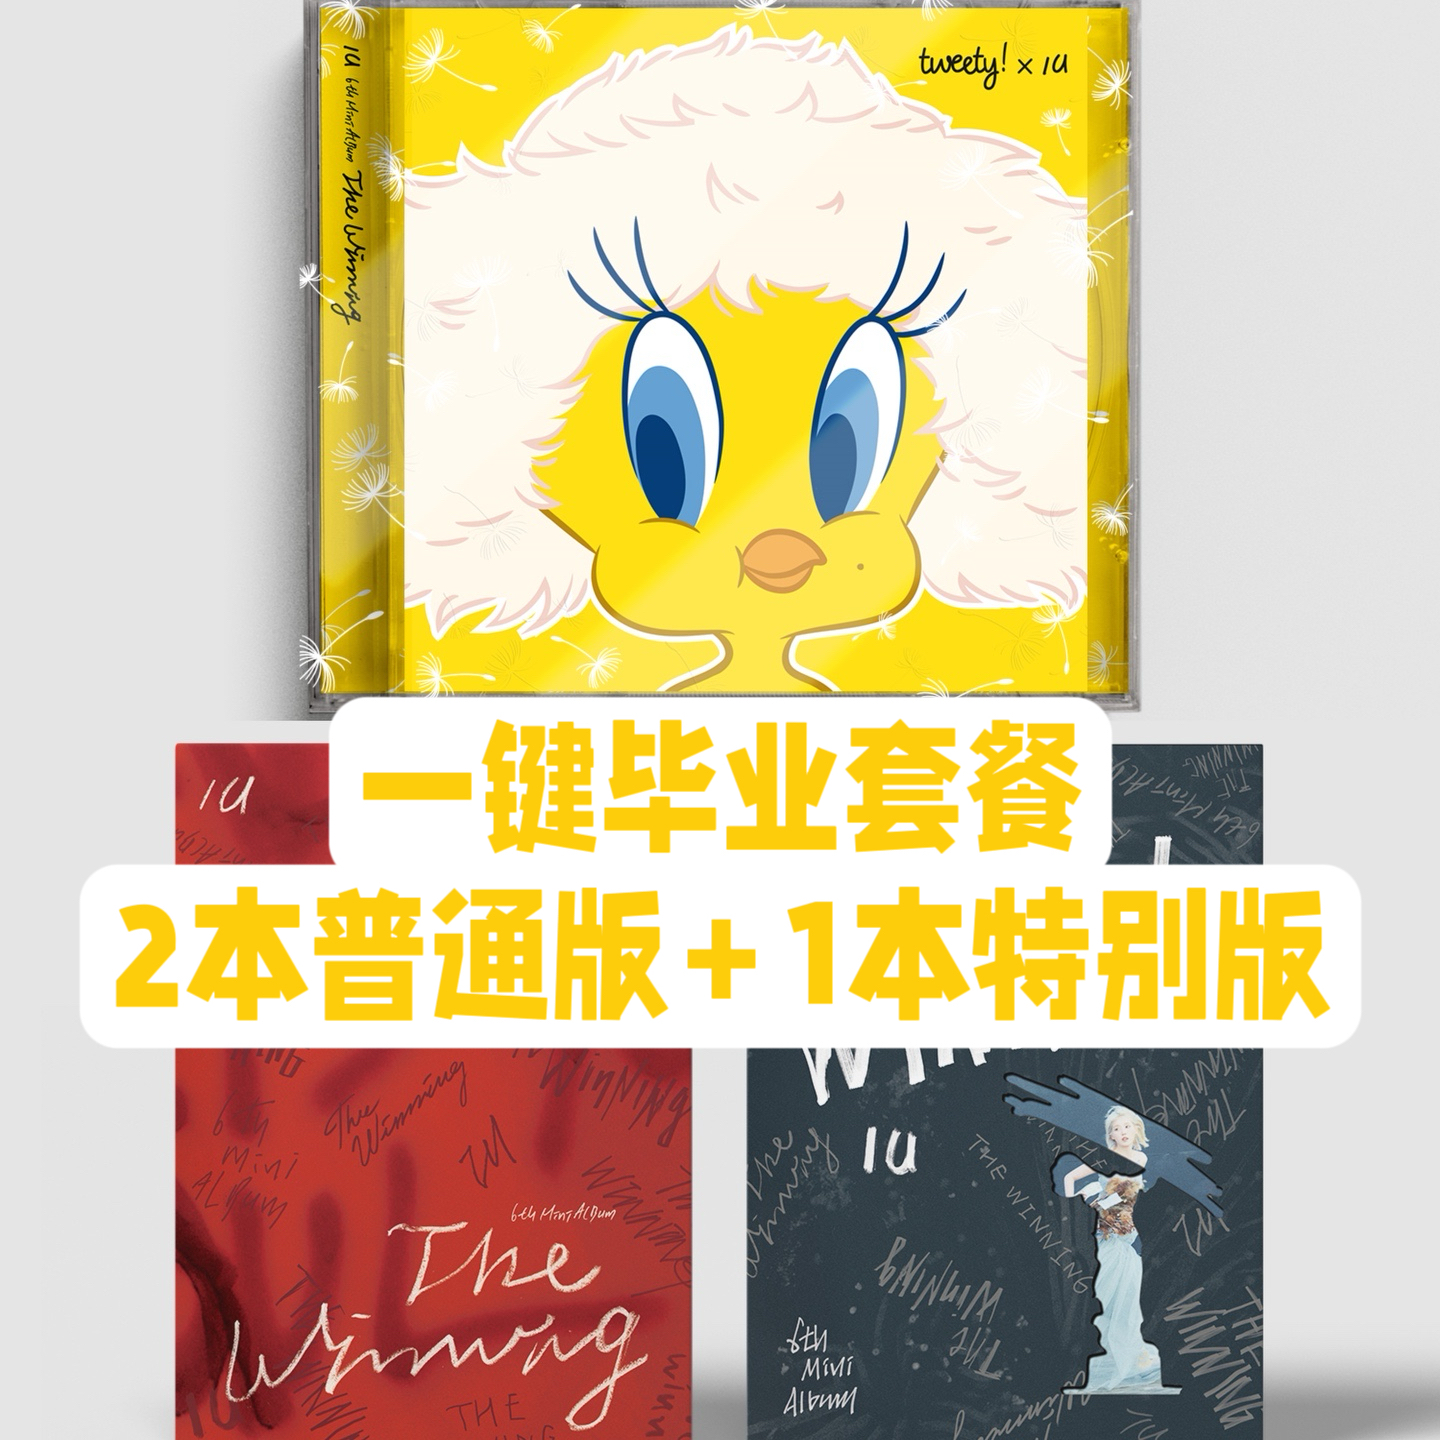 [全款 裸专 第二批(截止至02.26 早8点)][一键毕业] [3CD] IU - 6th Mini Album [The Winning] (I WIN Ver. + U WIN Ver. + Special Ver.) _两站联合